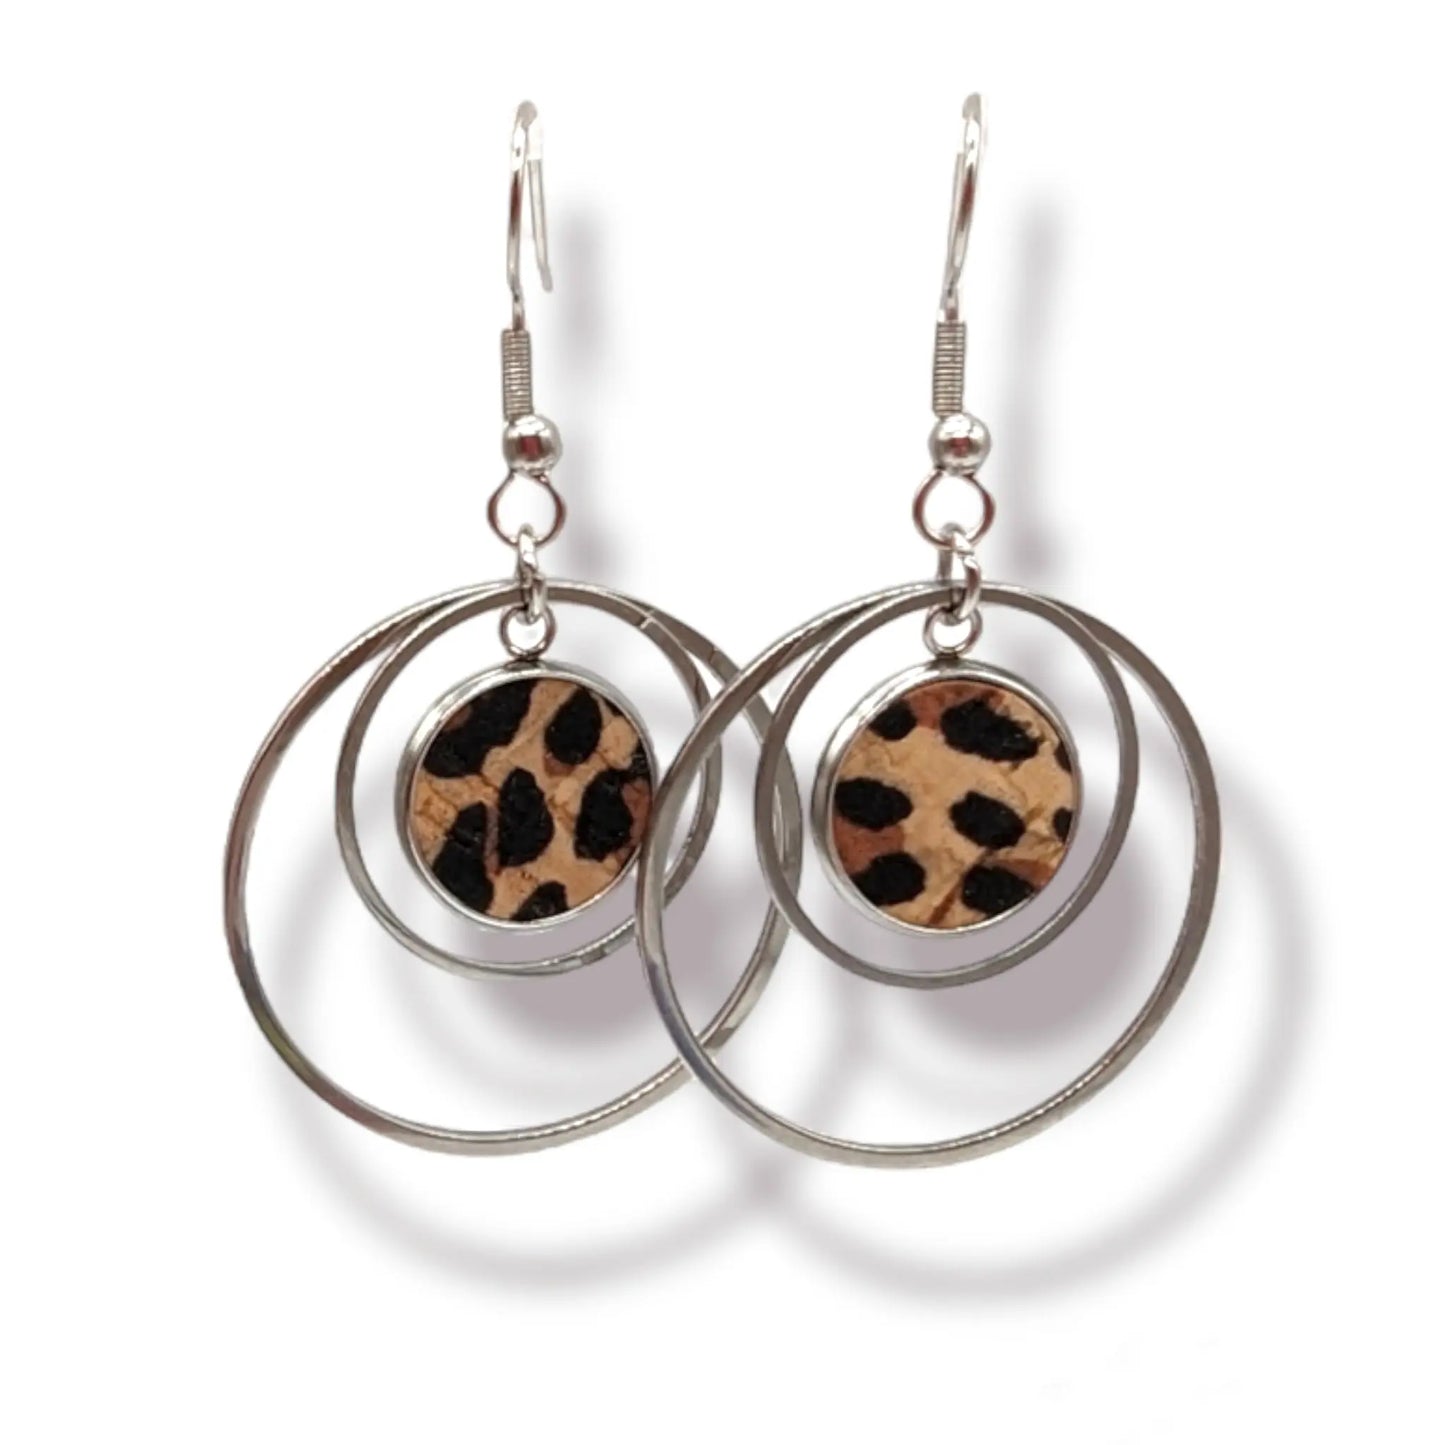 Cork and steel hoop earrings